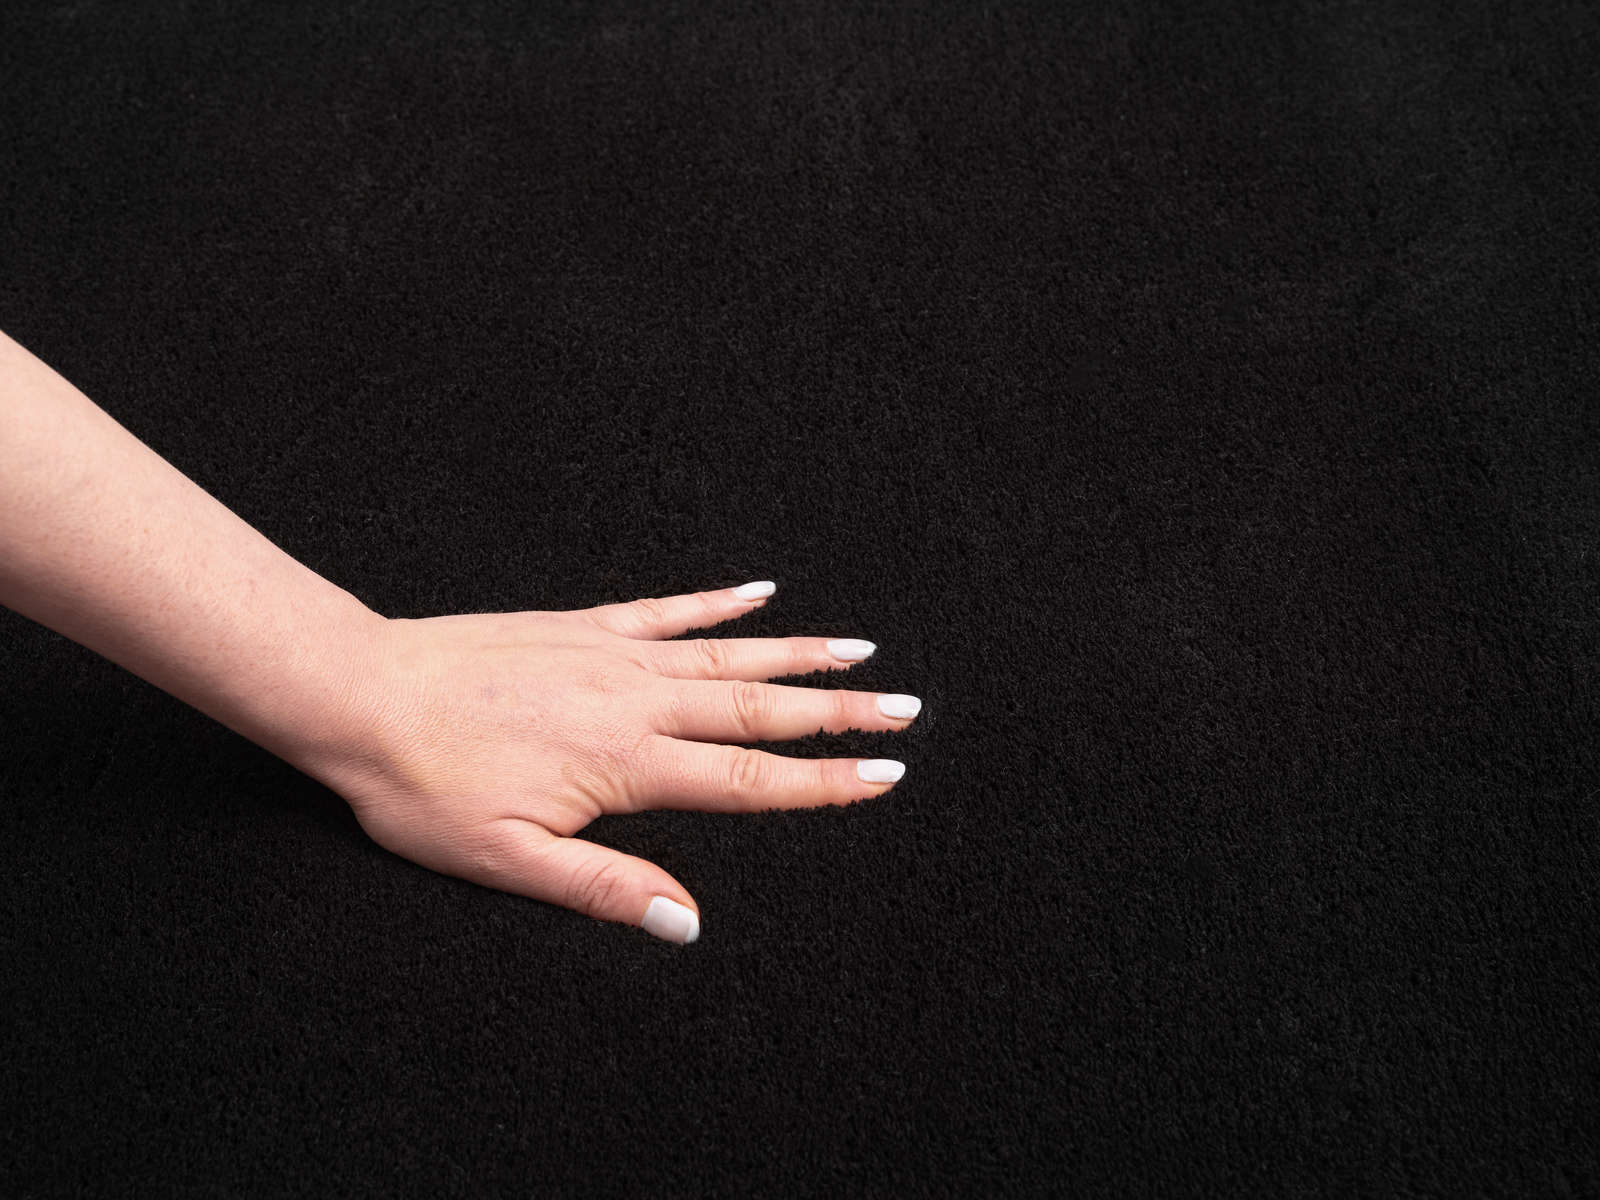             Fluweelzacht hoogpolig tapijt in zwart - 150 x 80 cm
        